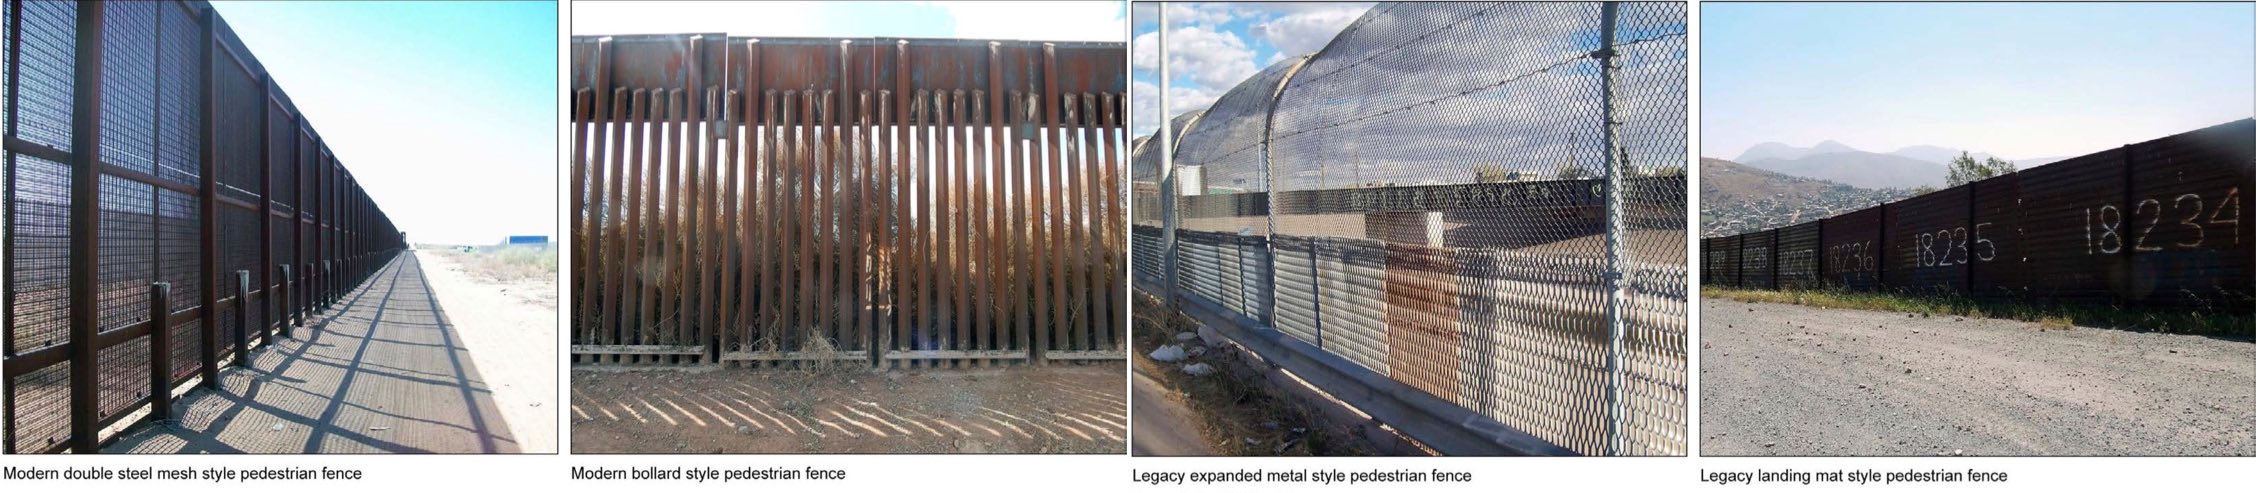 Photos of border fencing